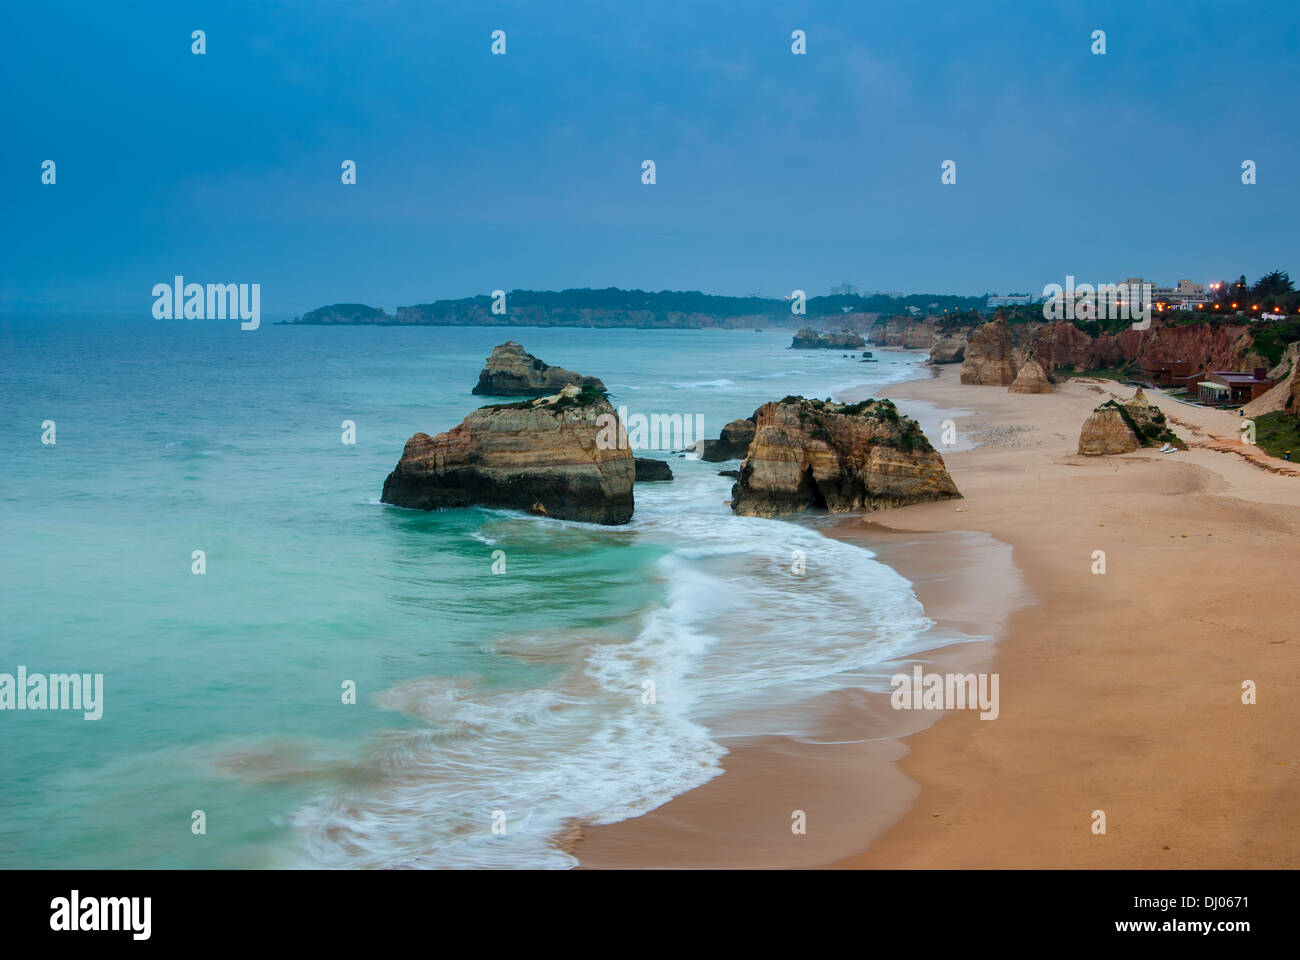 La plage de Praia da Rocha, sur l'océan Atlantique dans le sud du Portugal, Algarve Banque D'Images